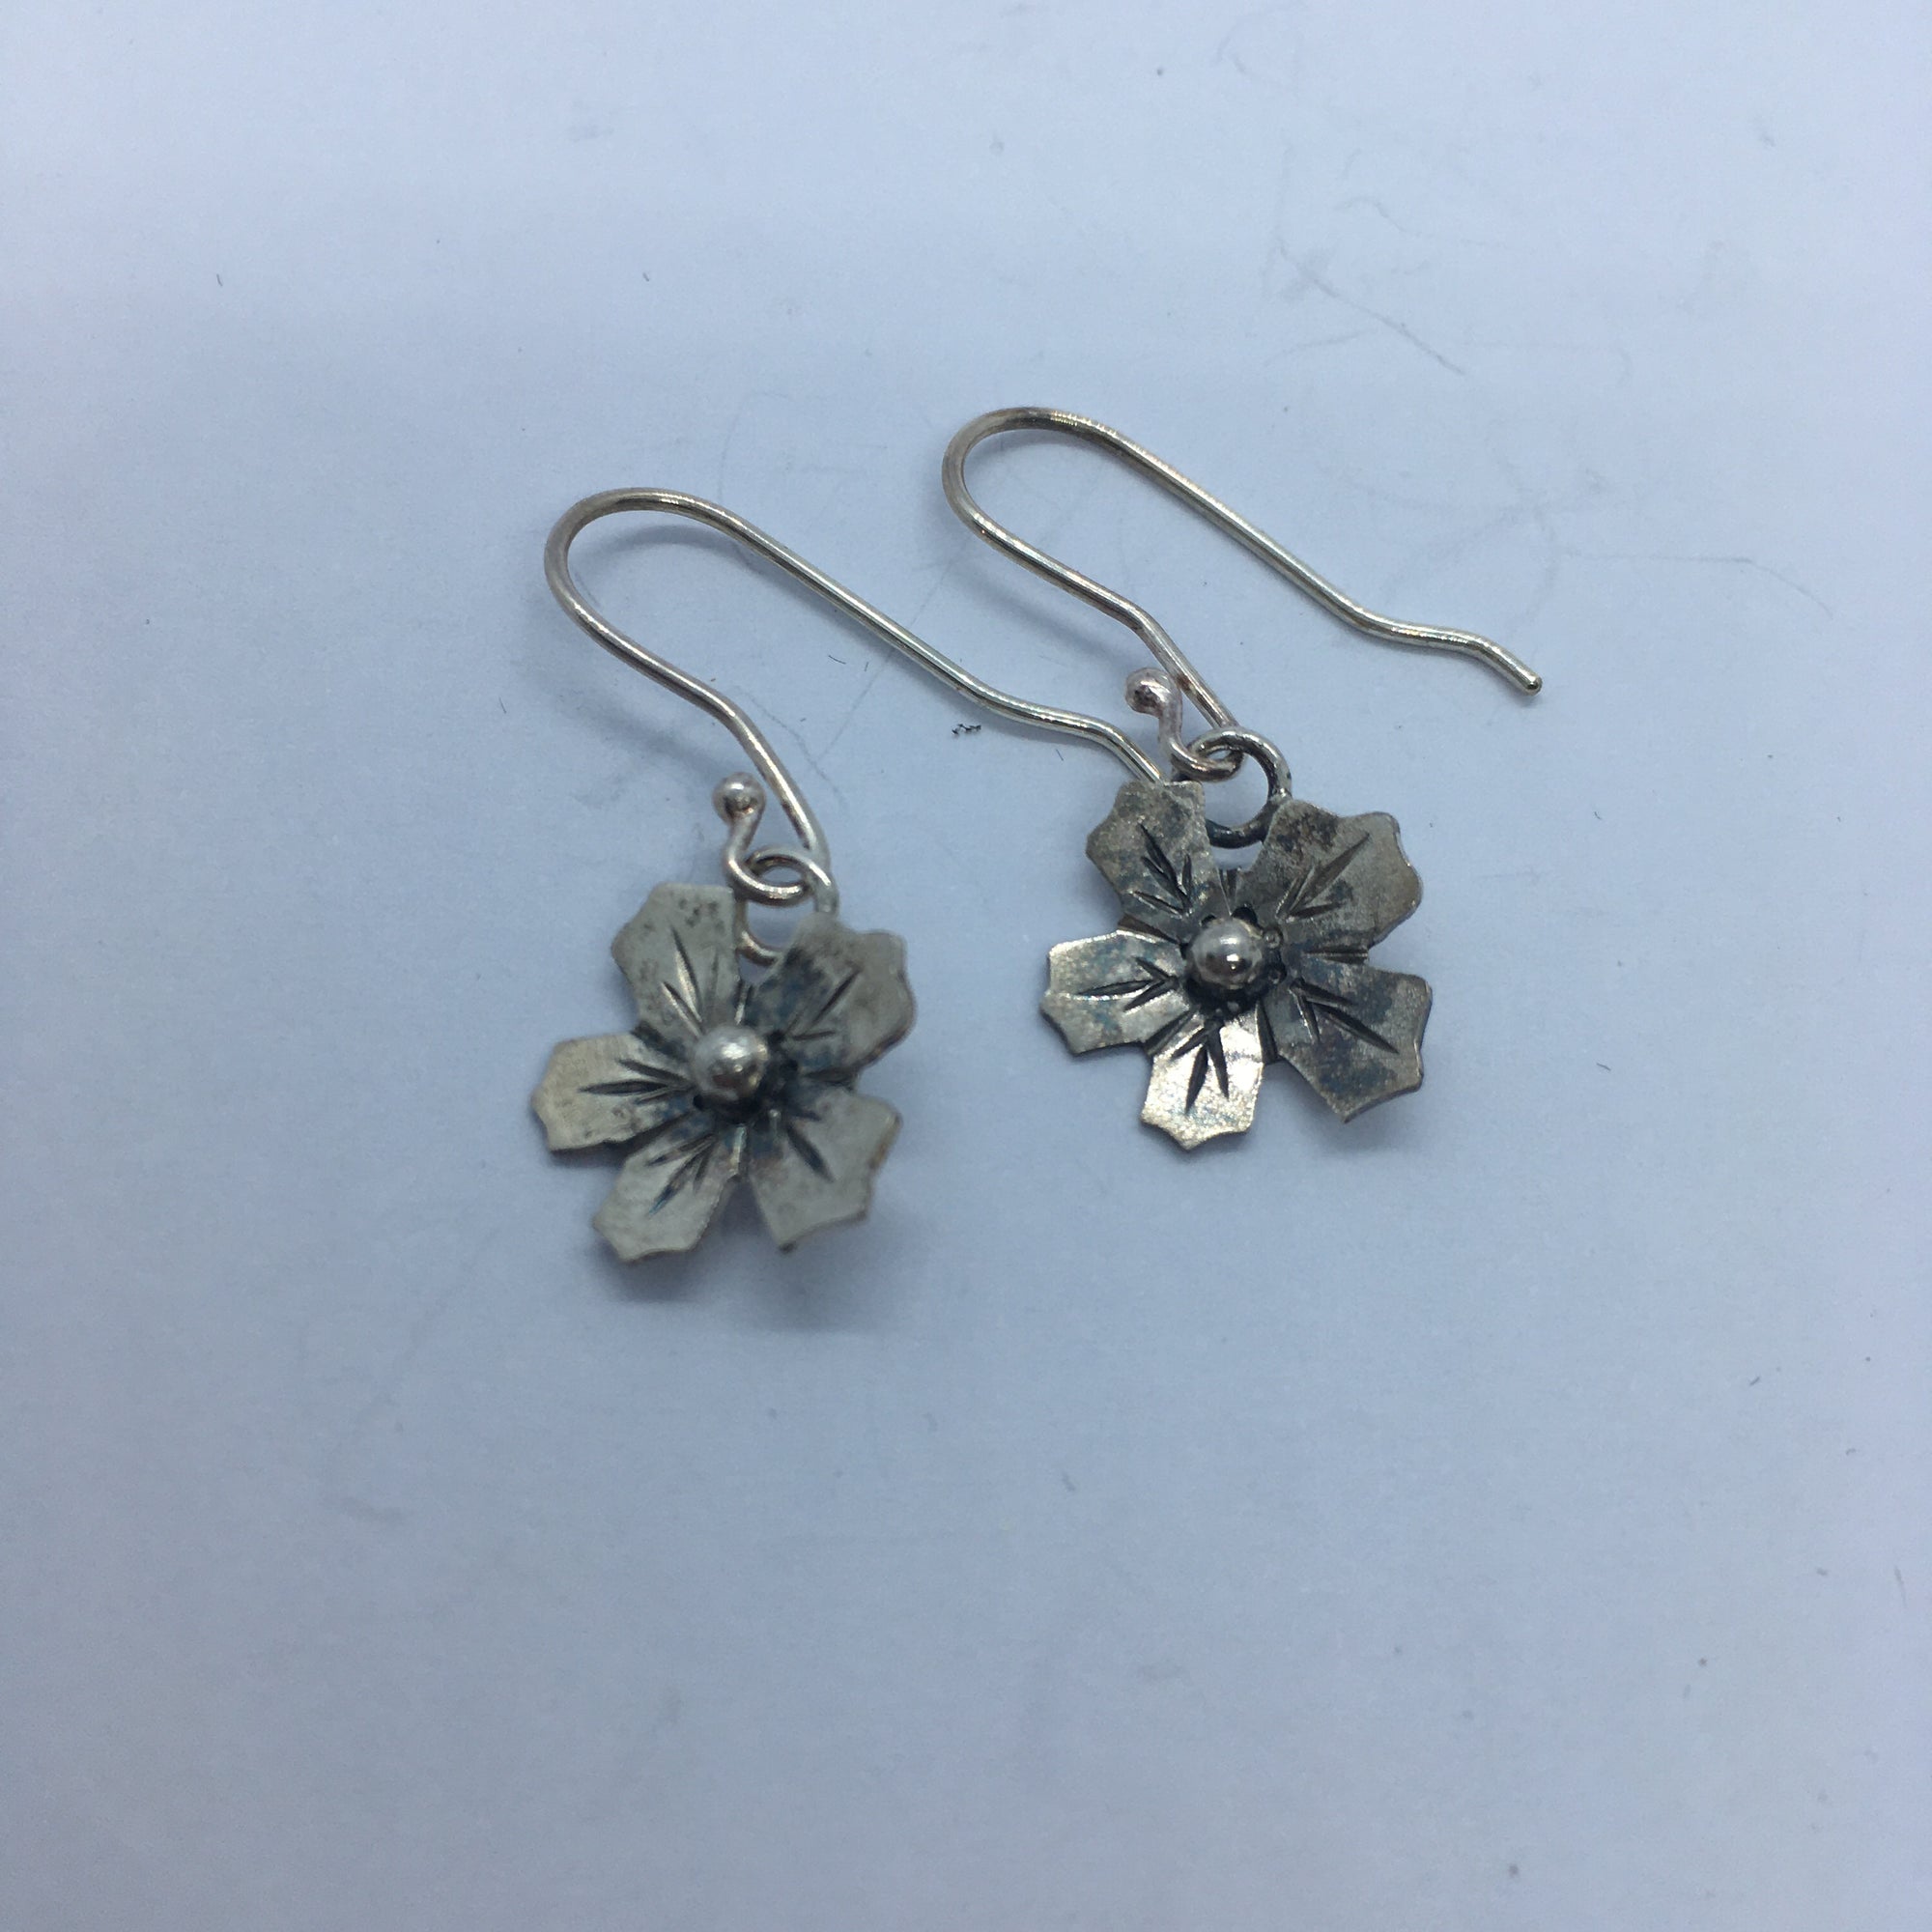 Silver Flower earrings